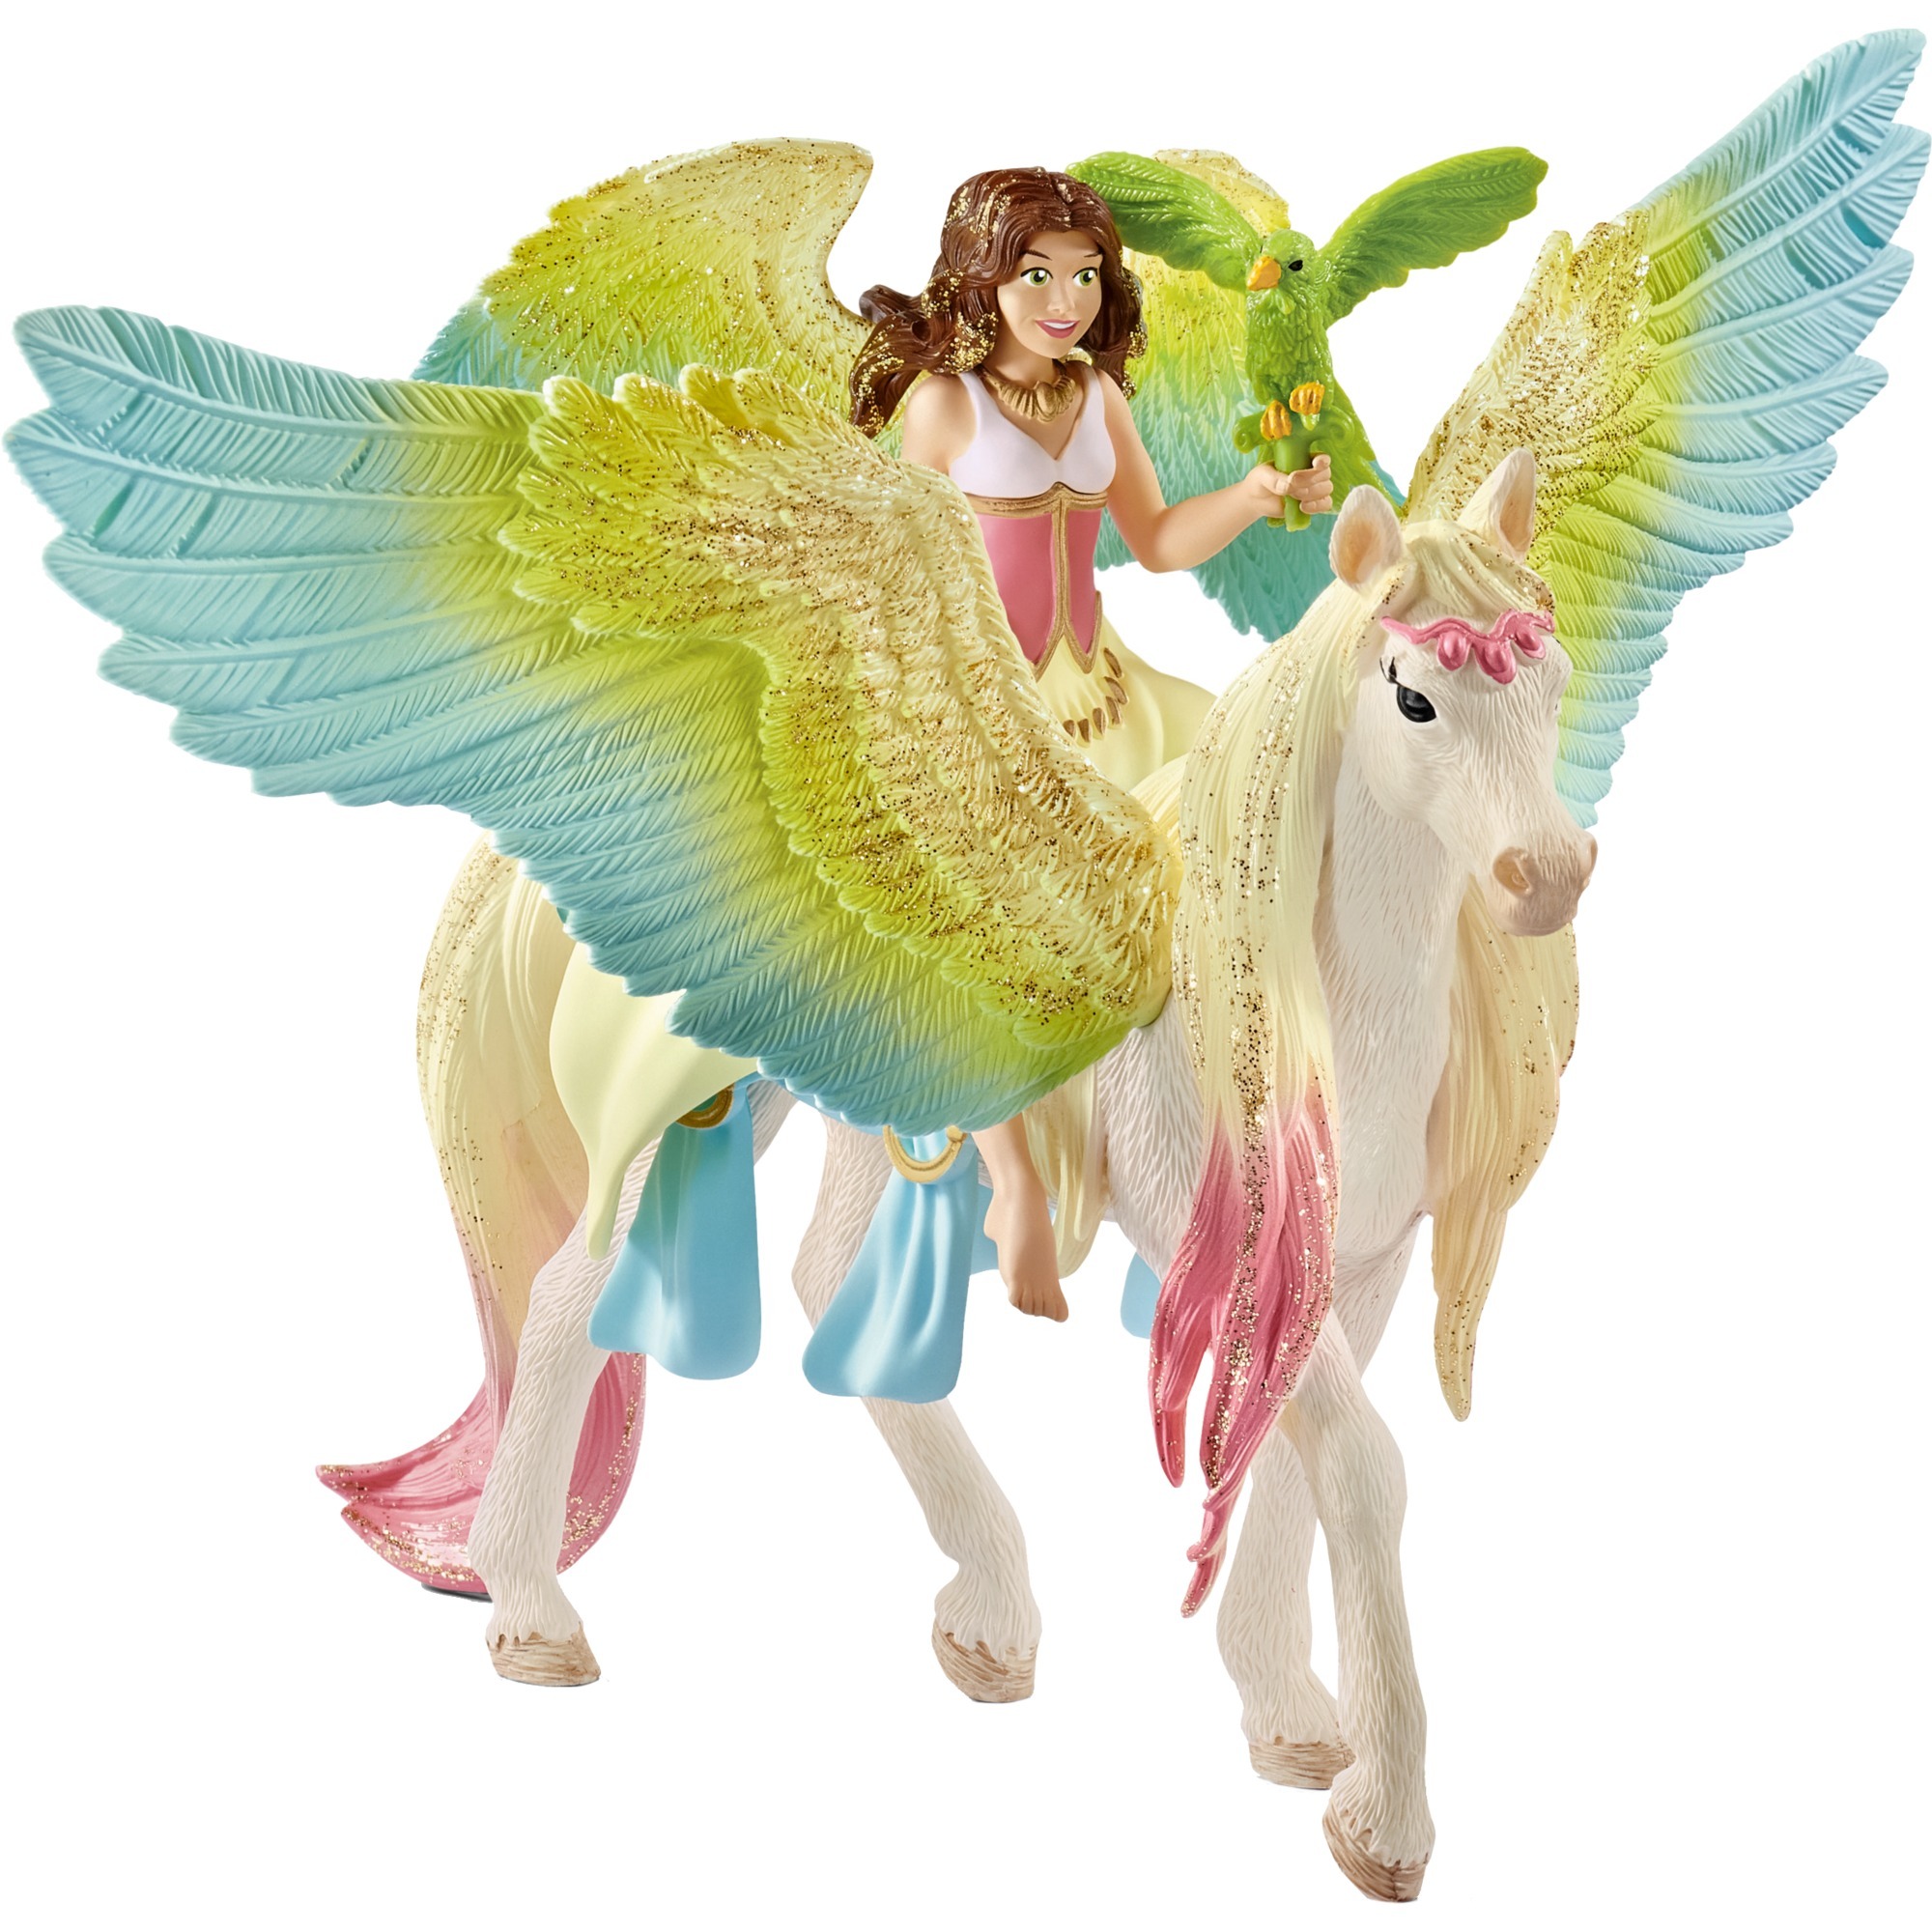 Image of Alternate - Bayala Surah mit Glitzer-Pegasus, Spielfigur online einkaufen bei Alternate